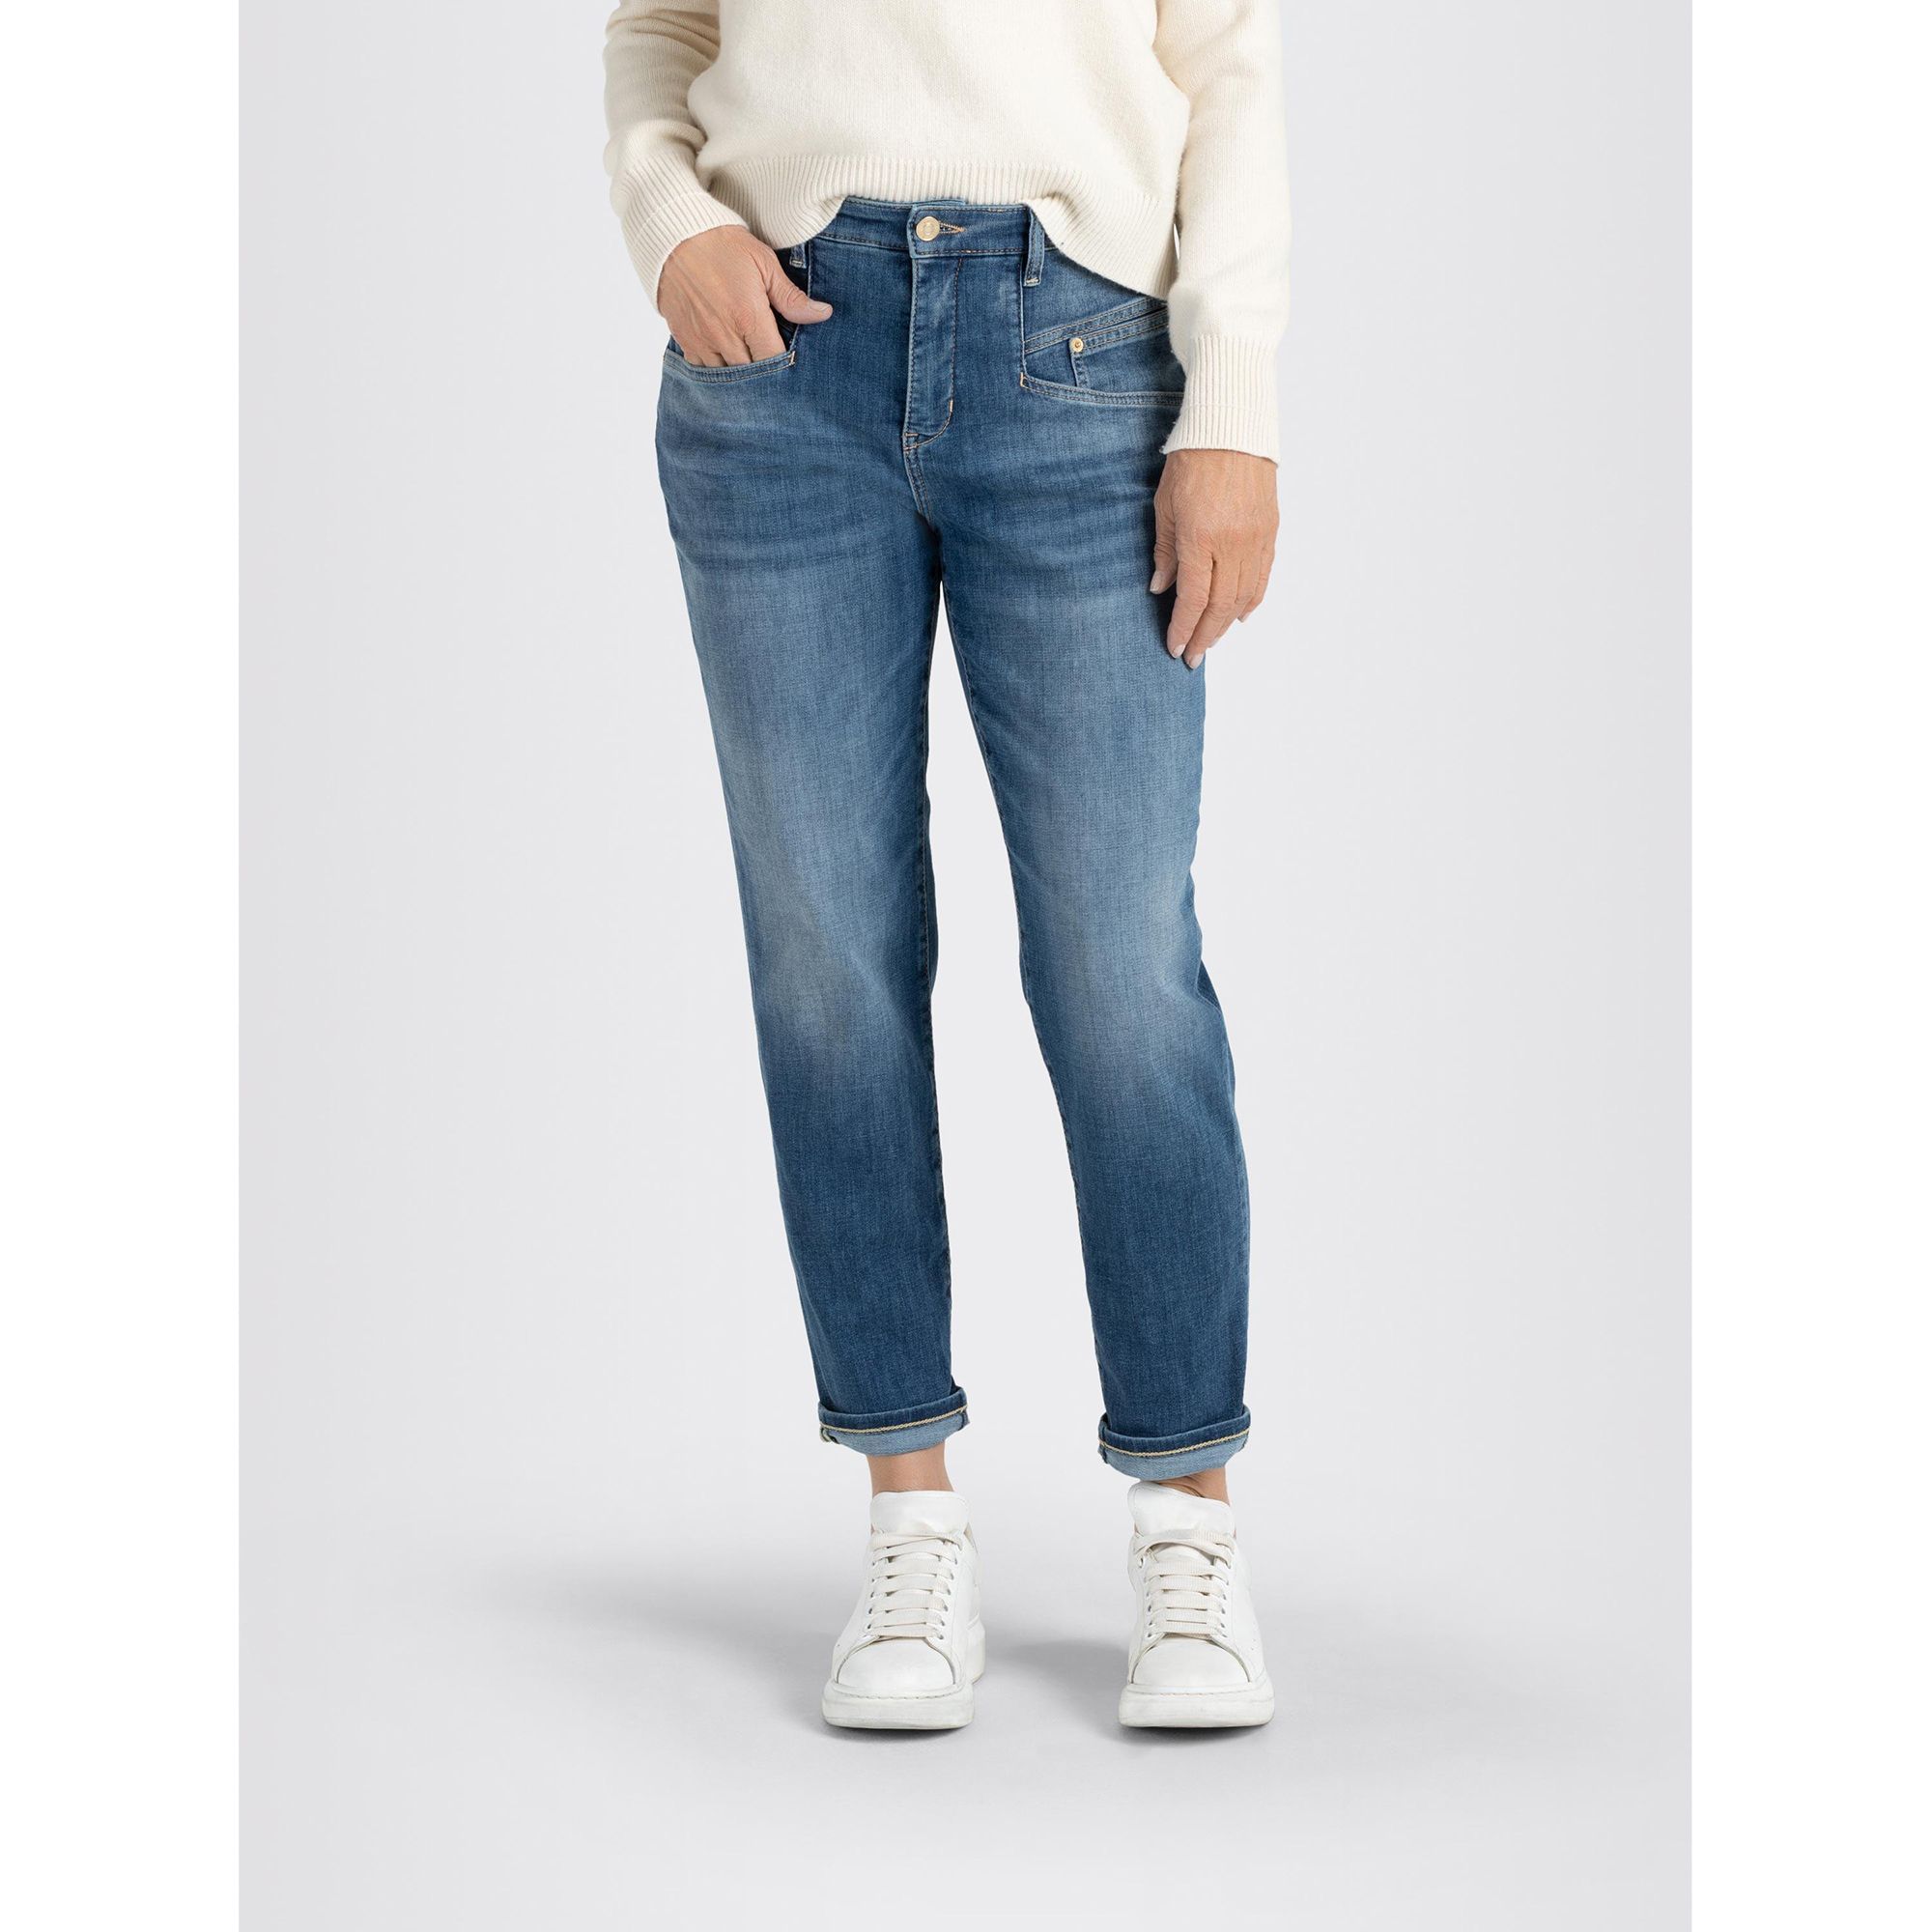 5-Pocket-Style MAC Carrot Beinverlauf hohe Leibhöhe Jeans konischer Rich